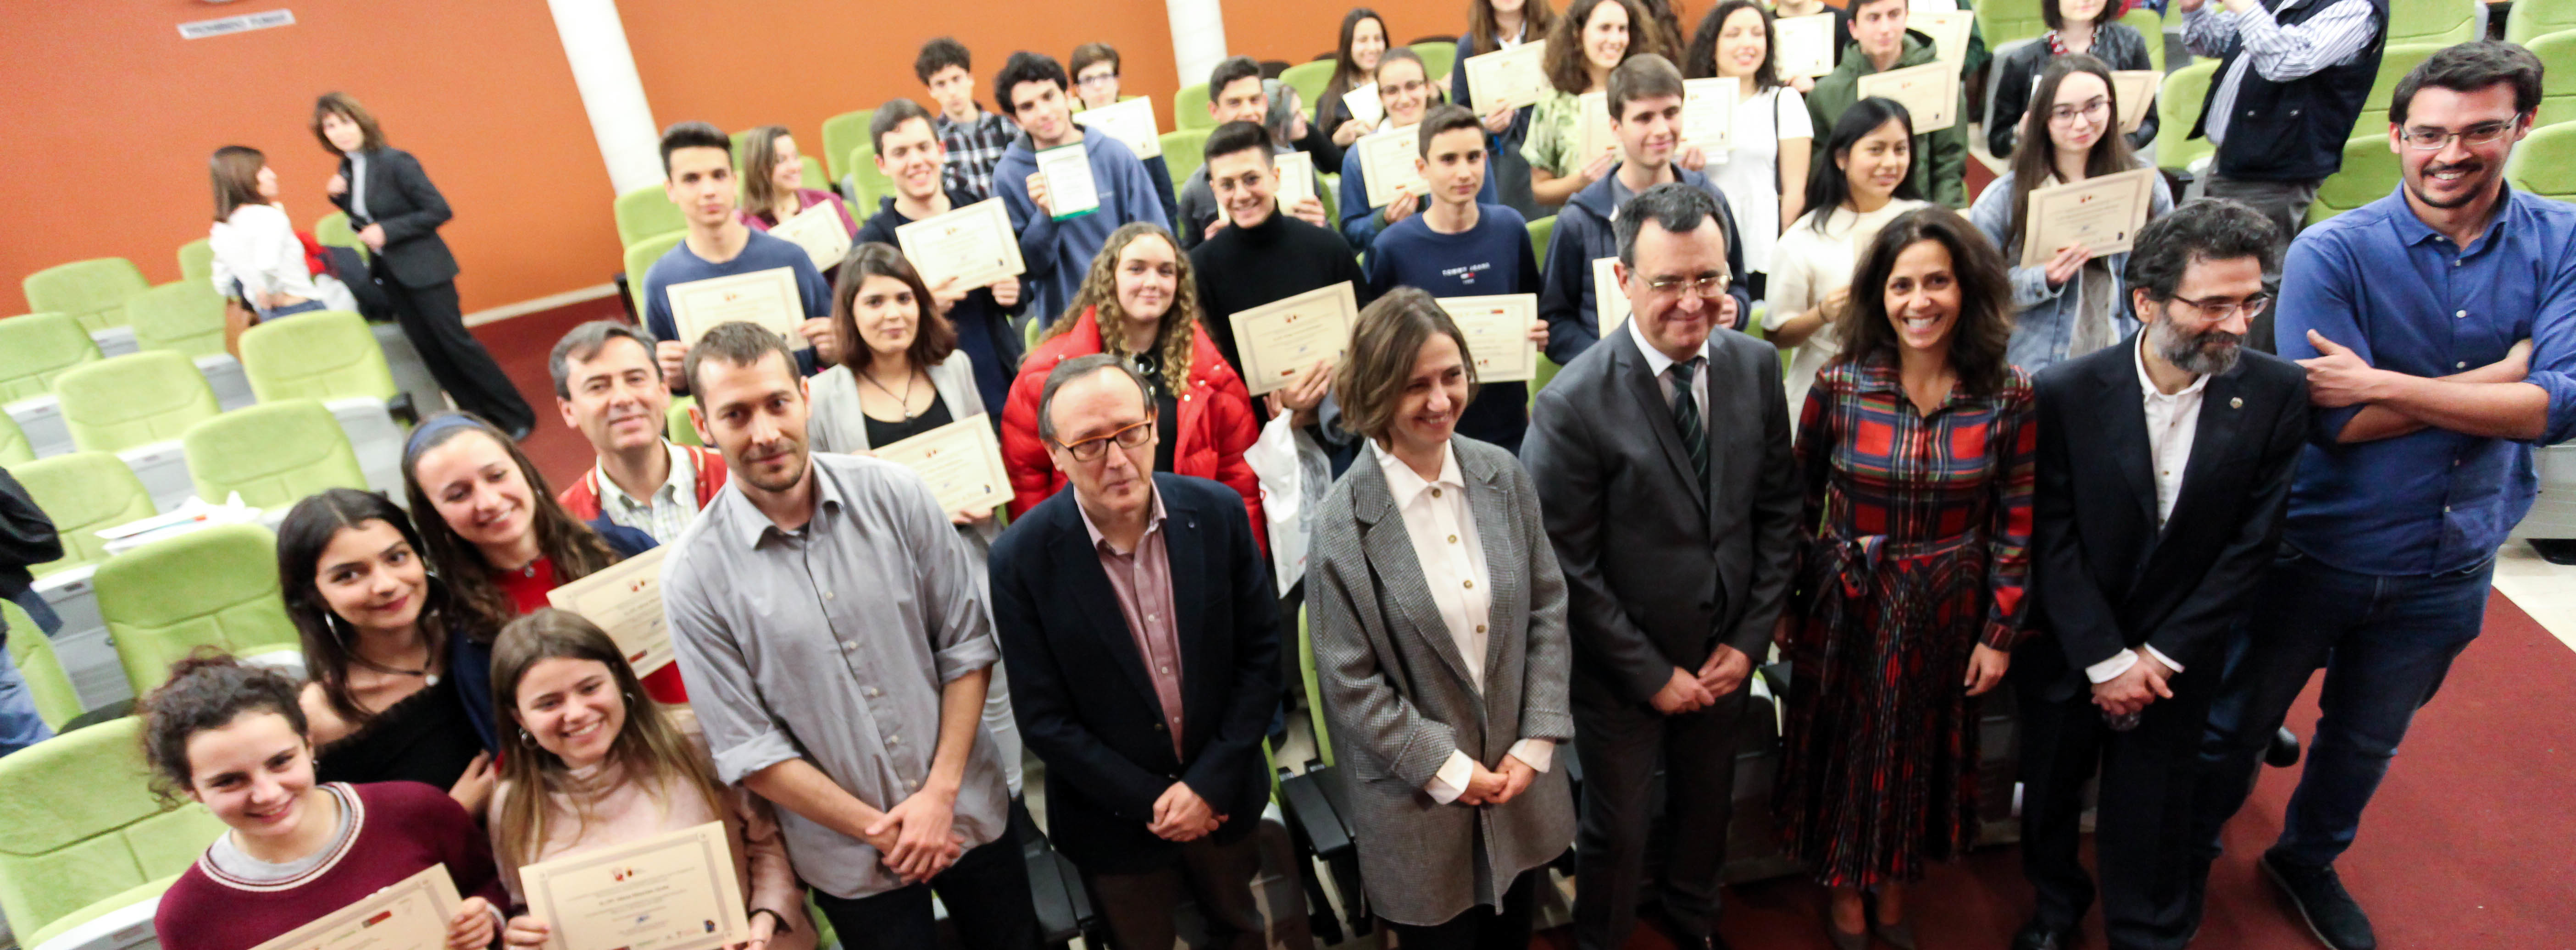 La Universidad de Murcia entrega los premios de la VI Olimpiada Filosófica de la Región